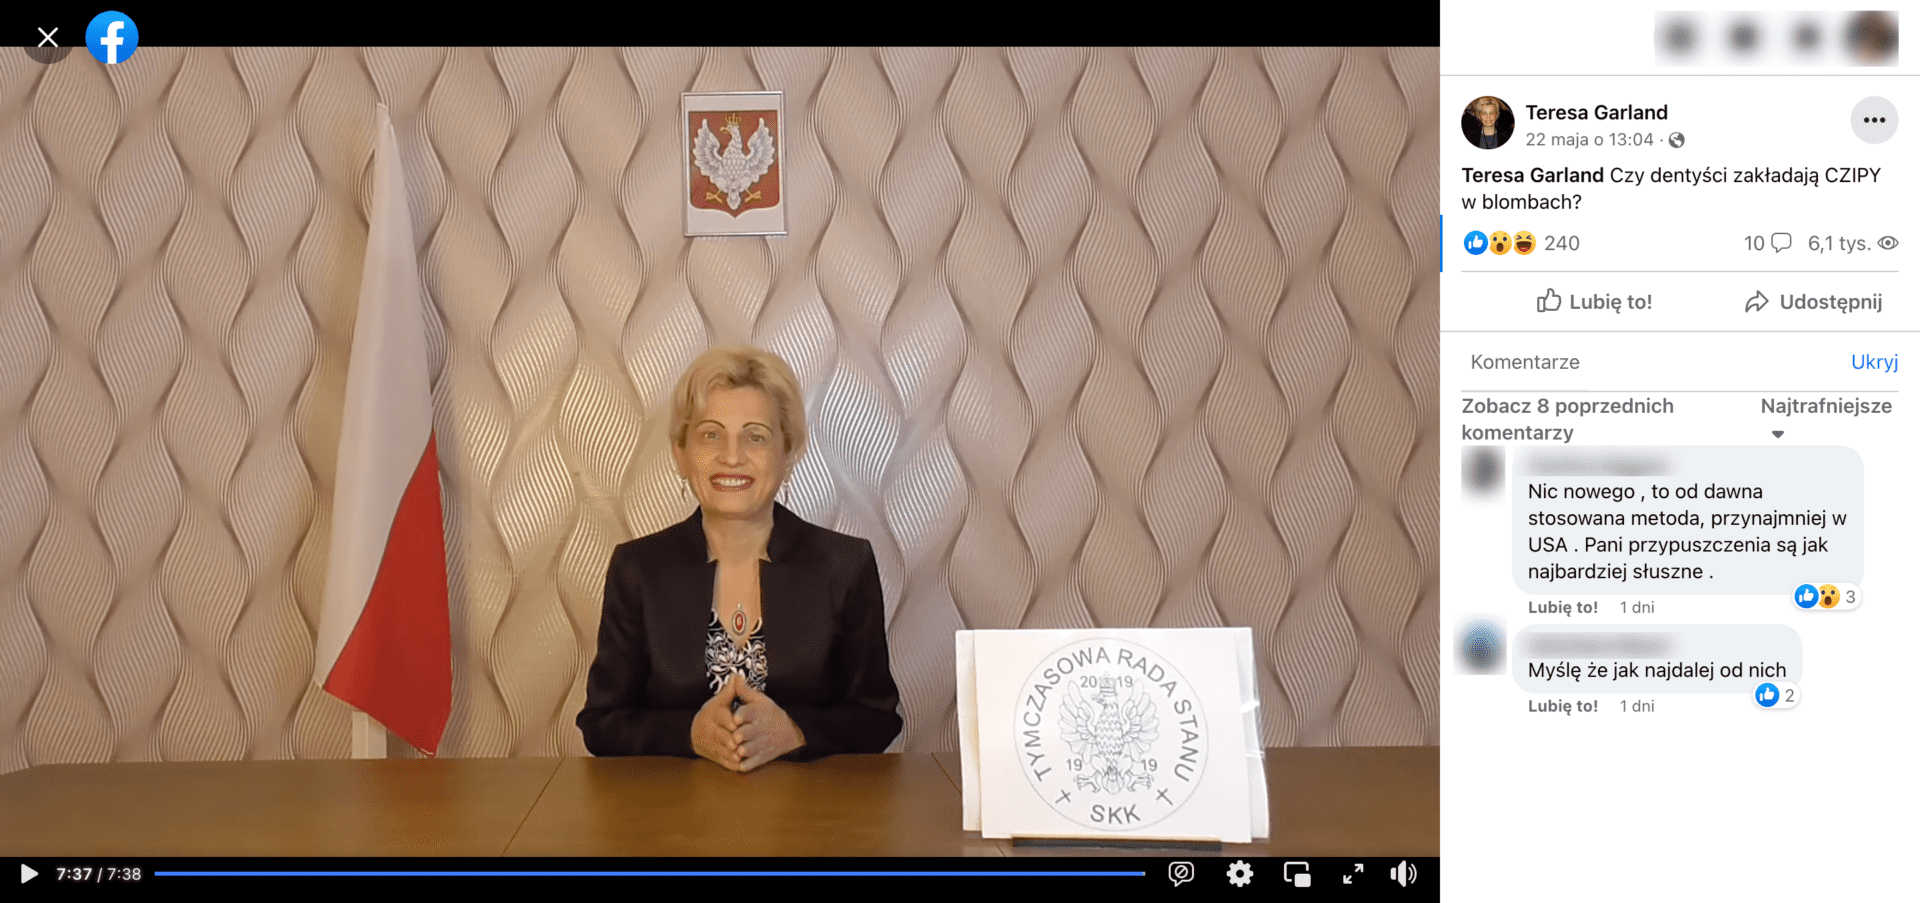 Zrzut ekranu posta, w którym udostępniono omawiane nagranie. Widoczna jest Teresa Garland, a obok niej flaga Polski i napis o treści: „Tymczasowa Rada Stanu”.